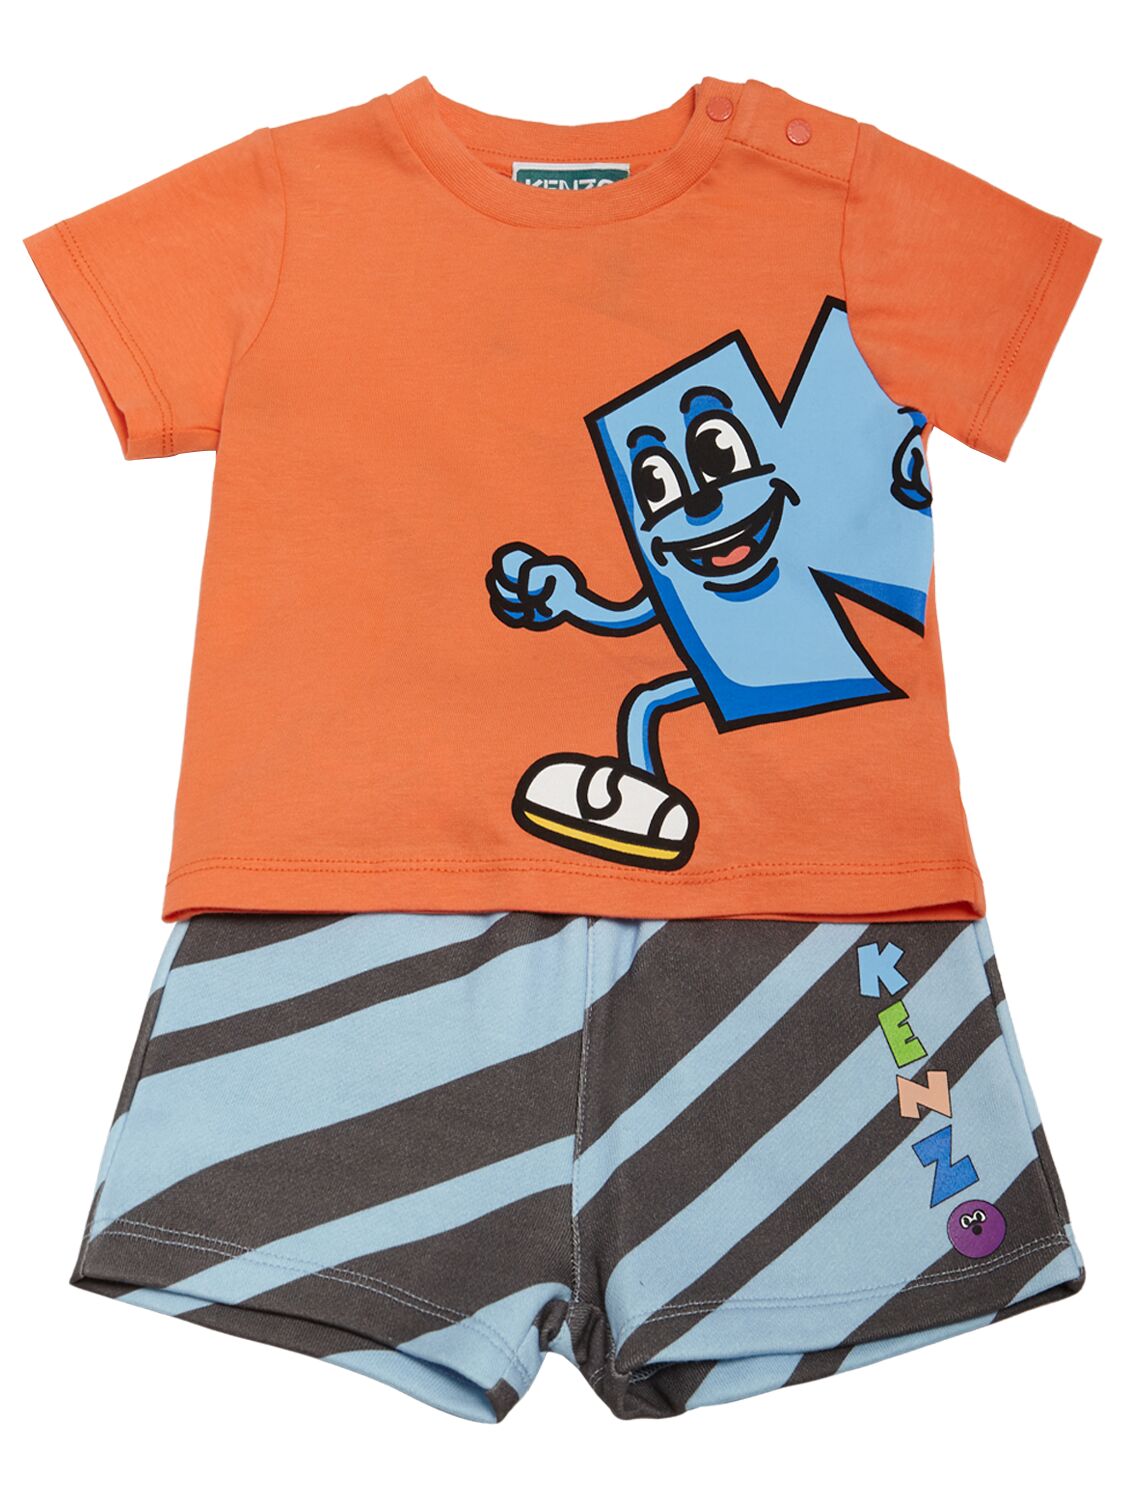 Kenzo Kids' Cotton T-shirt & Shorts In Orange